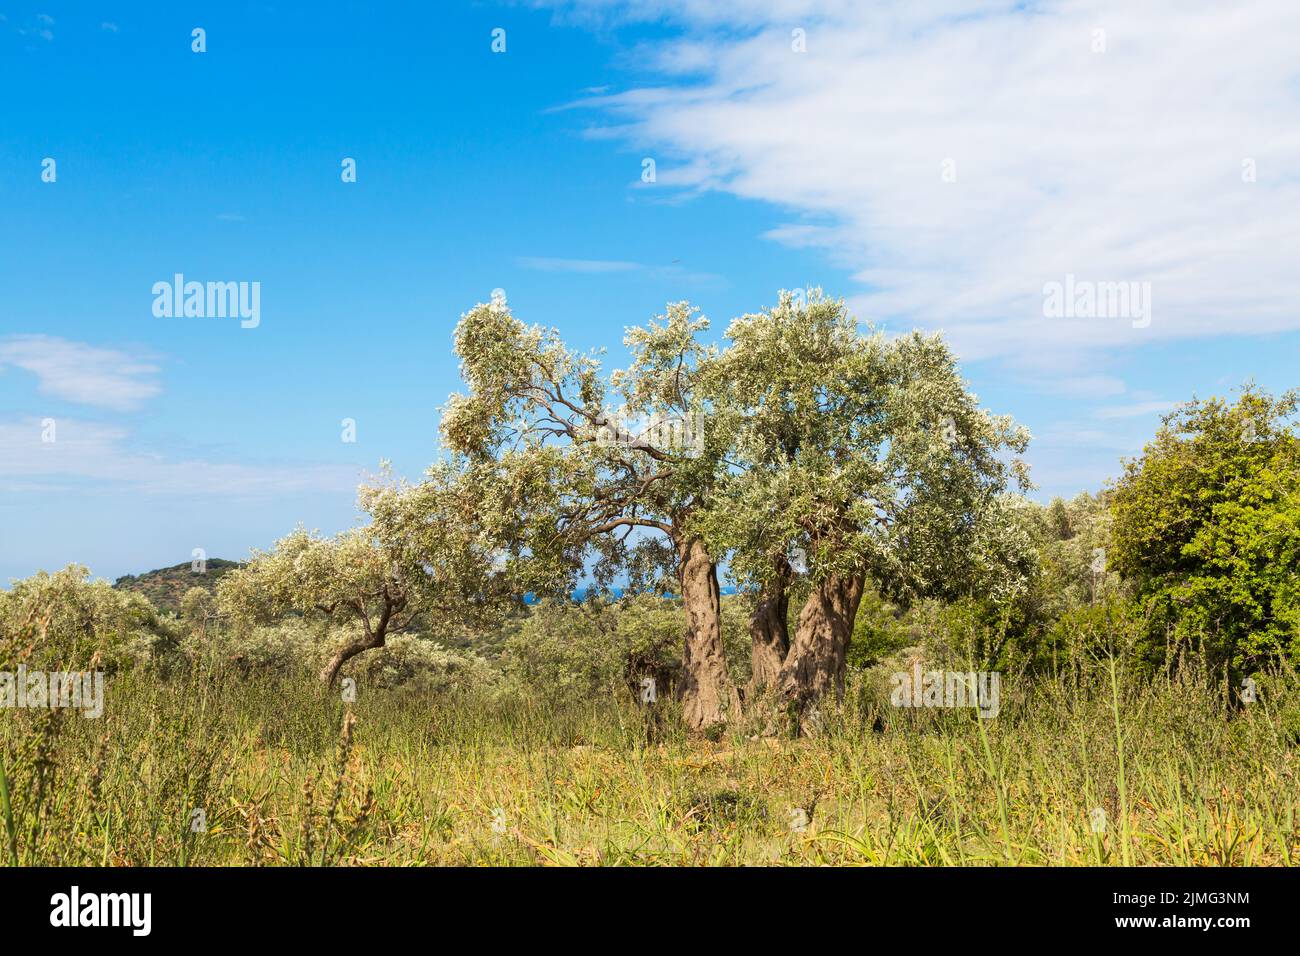 Sommerurlaub Hintergrund mit griechischen Insel Thassos, Olivenbäume, blau bewölkten Himmel, Griechenland Stockfoto